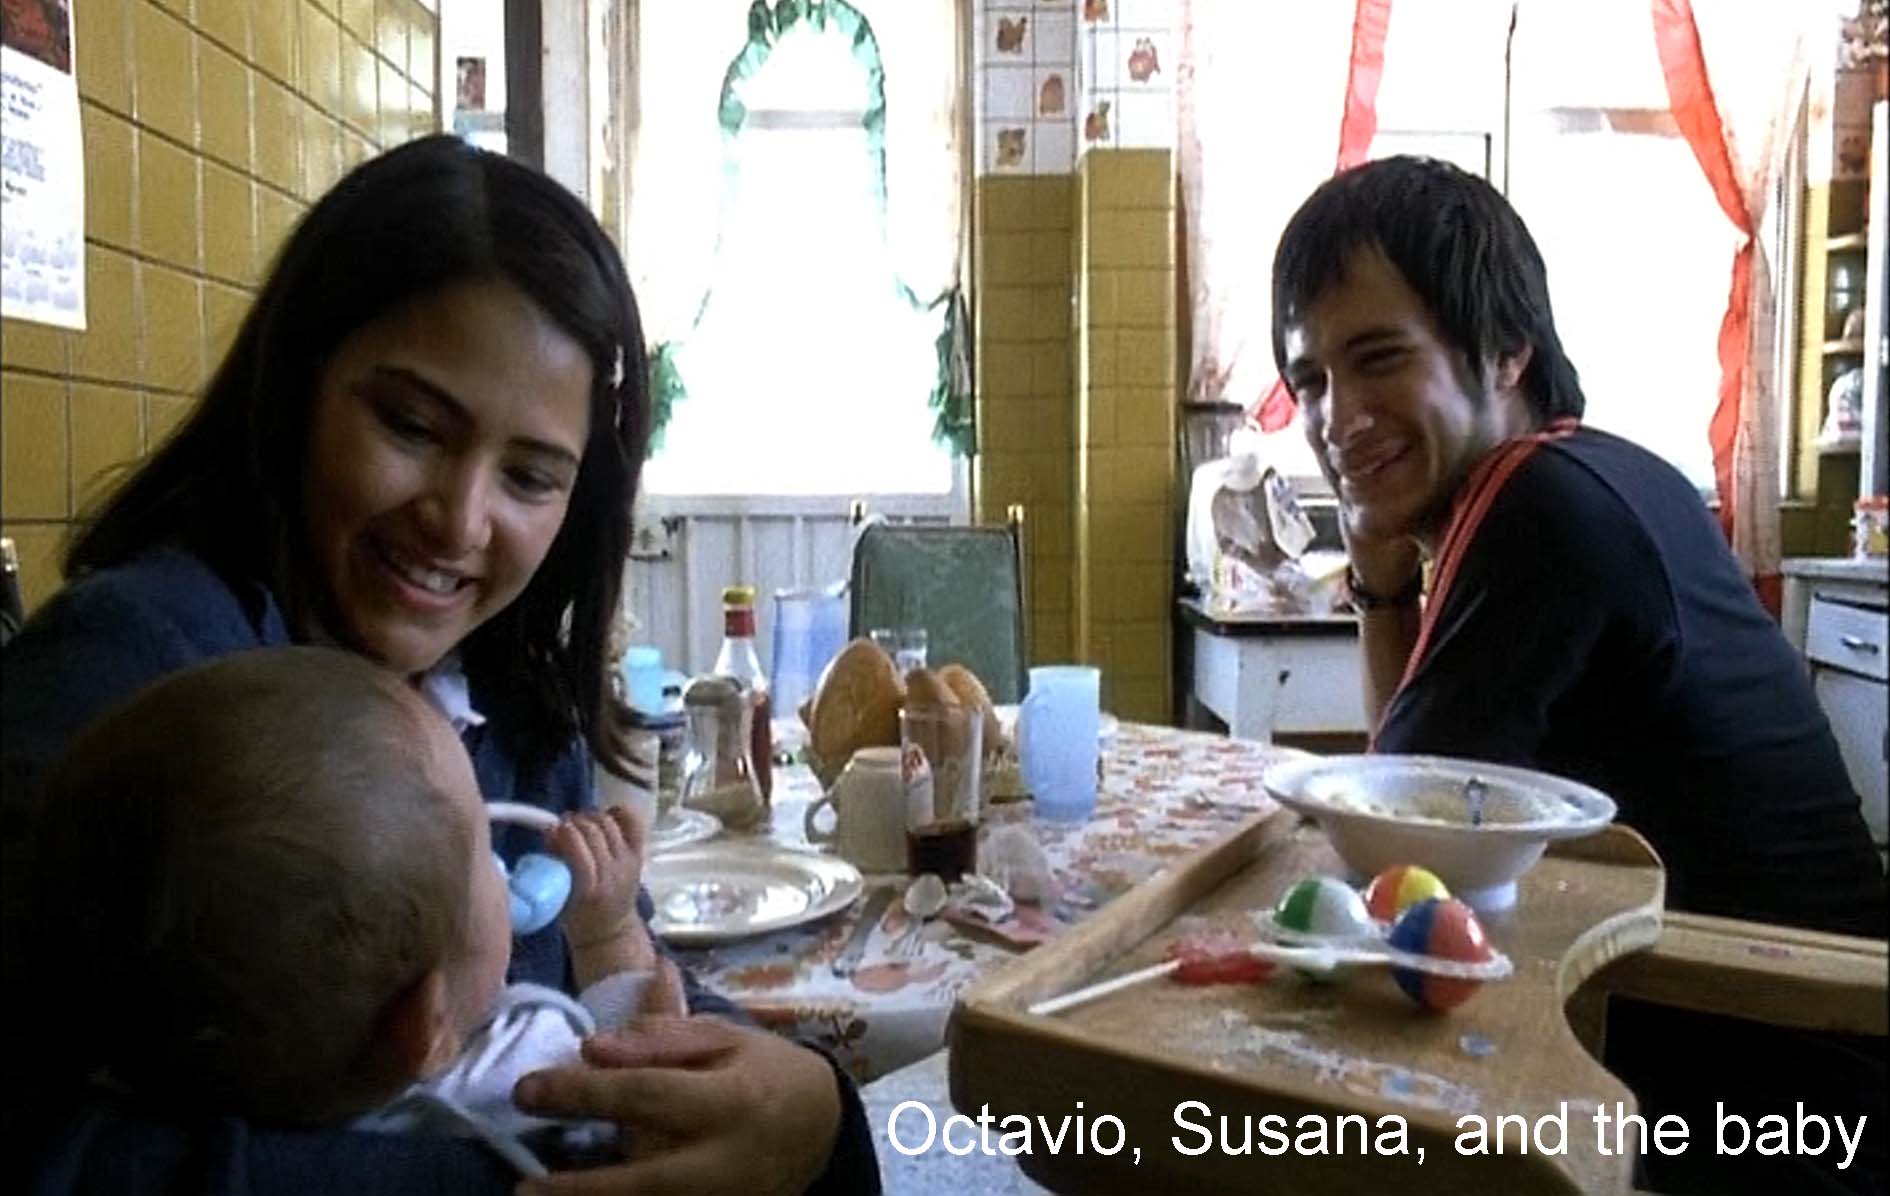 Octavio, Susana, and the baby